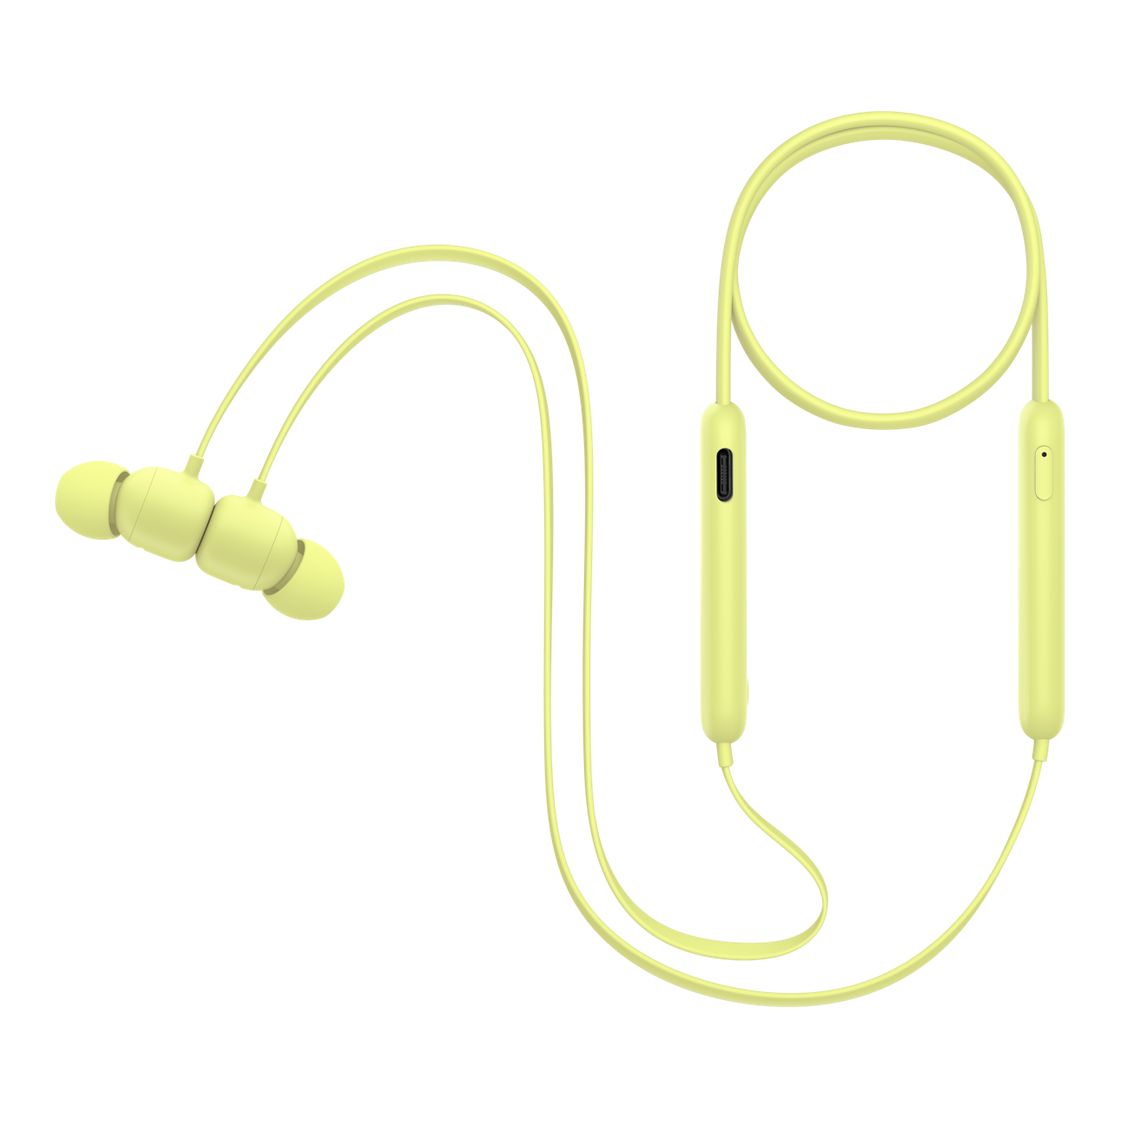  - Audifono In Ear Wireless Flex Beats / Amarillo 5